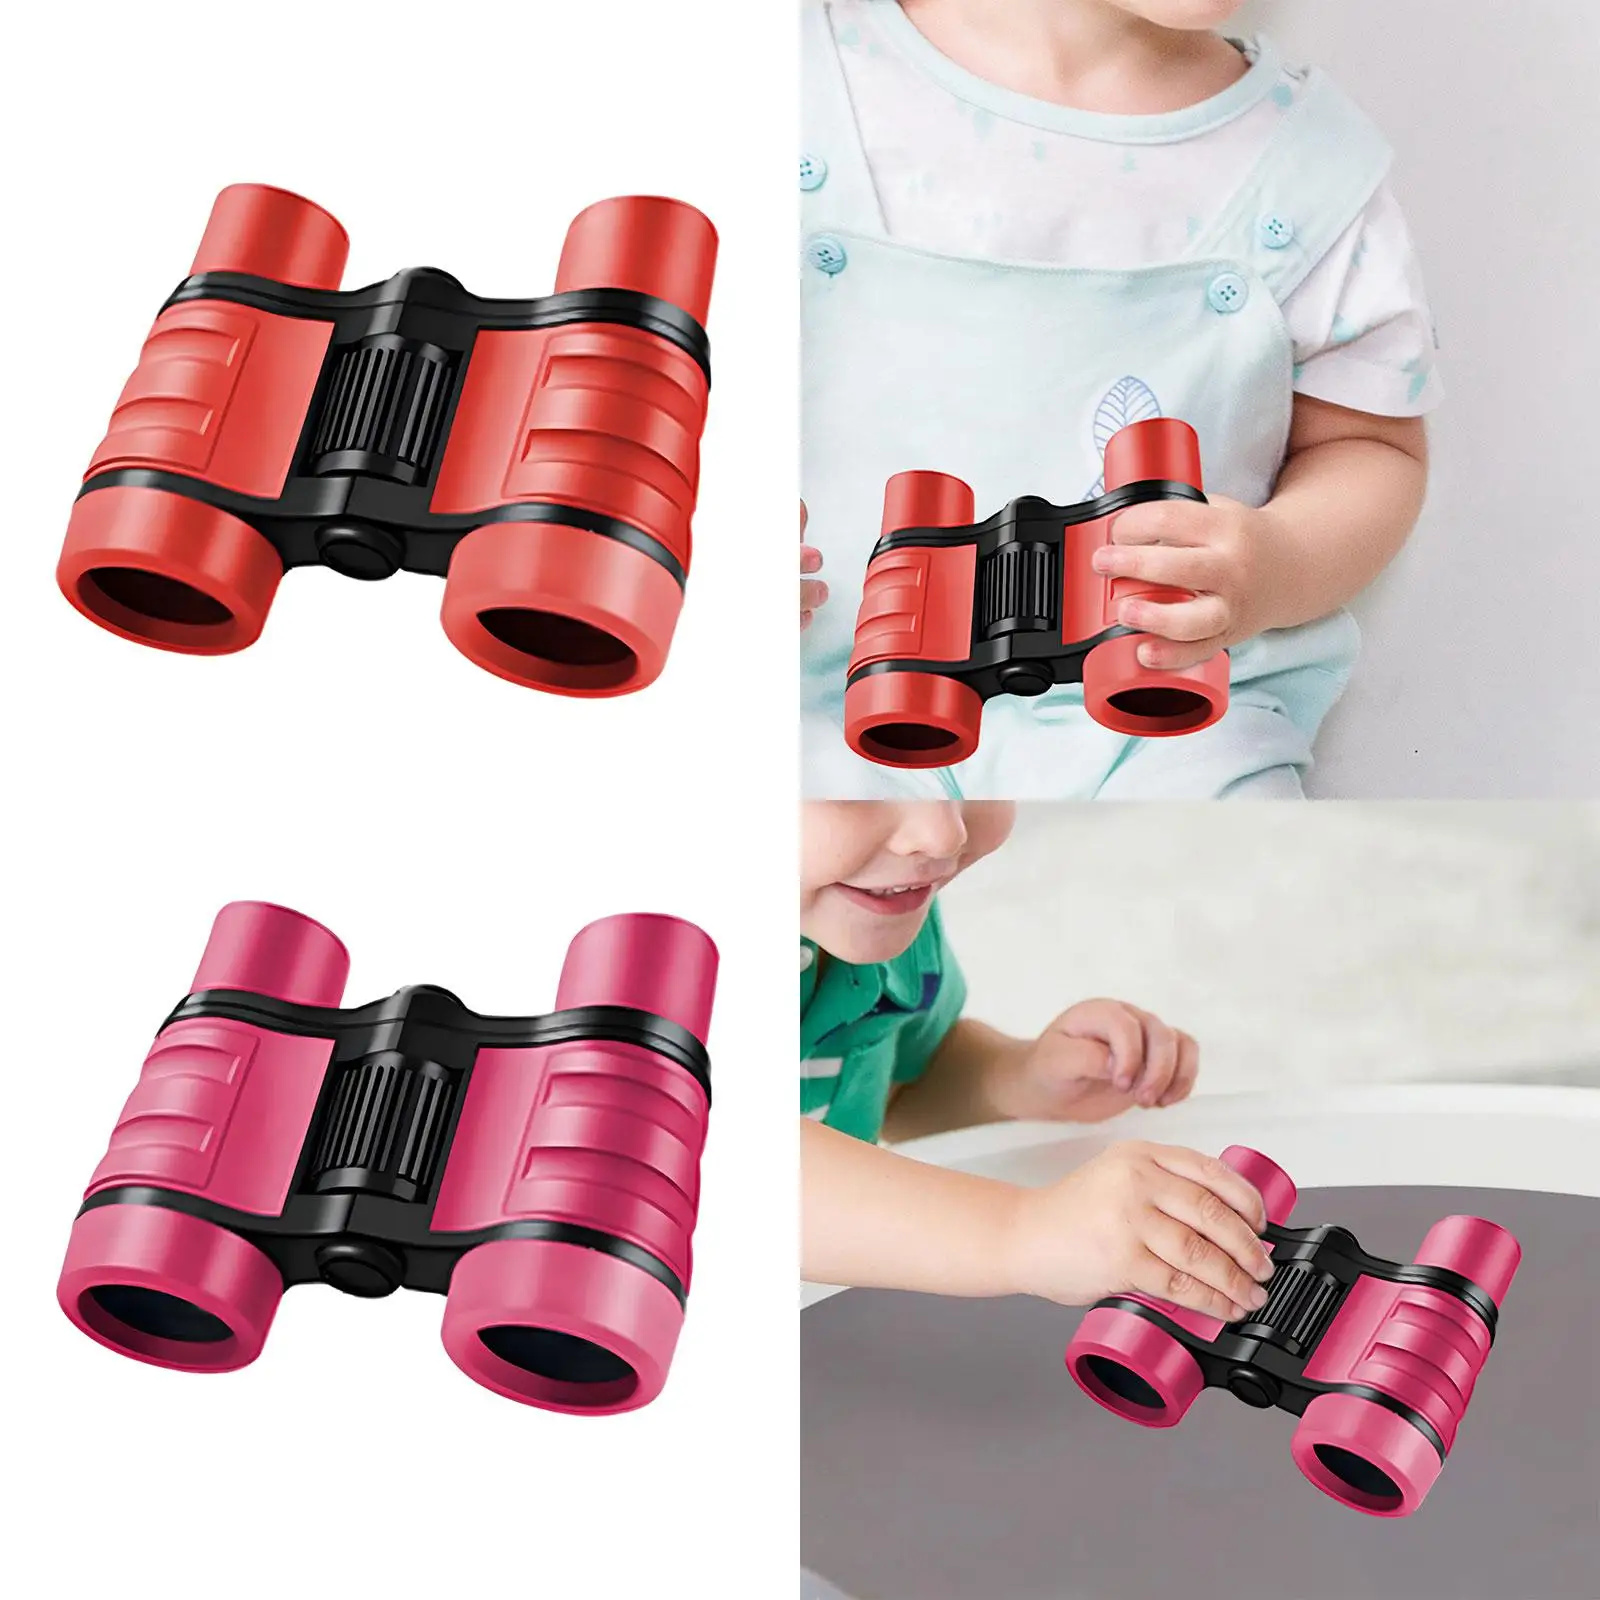 Kids Binoculars Children Magnification Toy 4x30 Jungle Binoculars Toy for Birthday Exploration Outdoor Activities